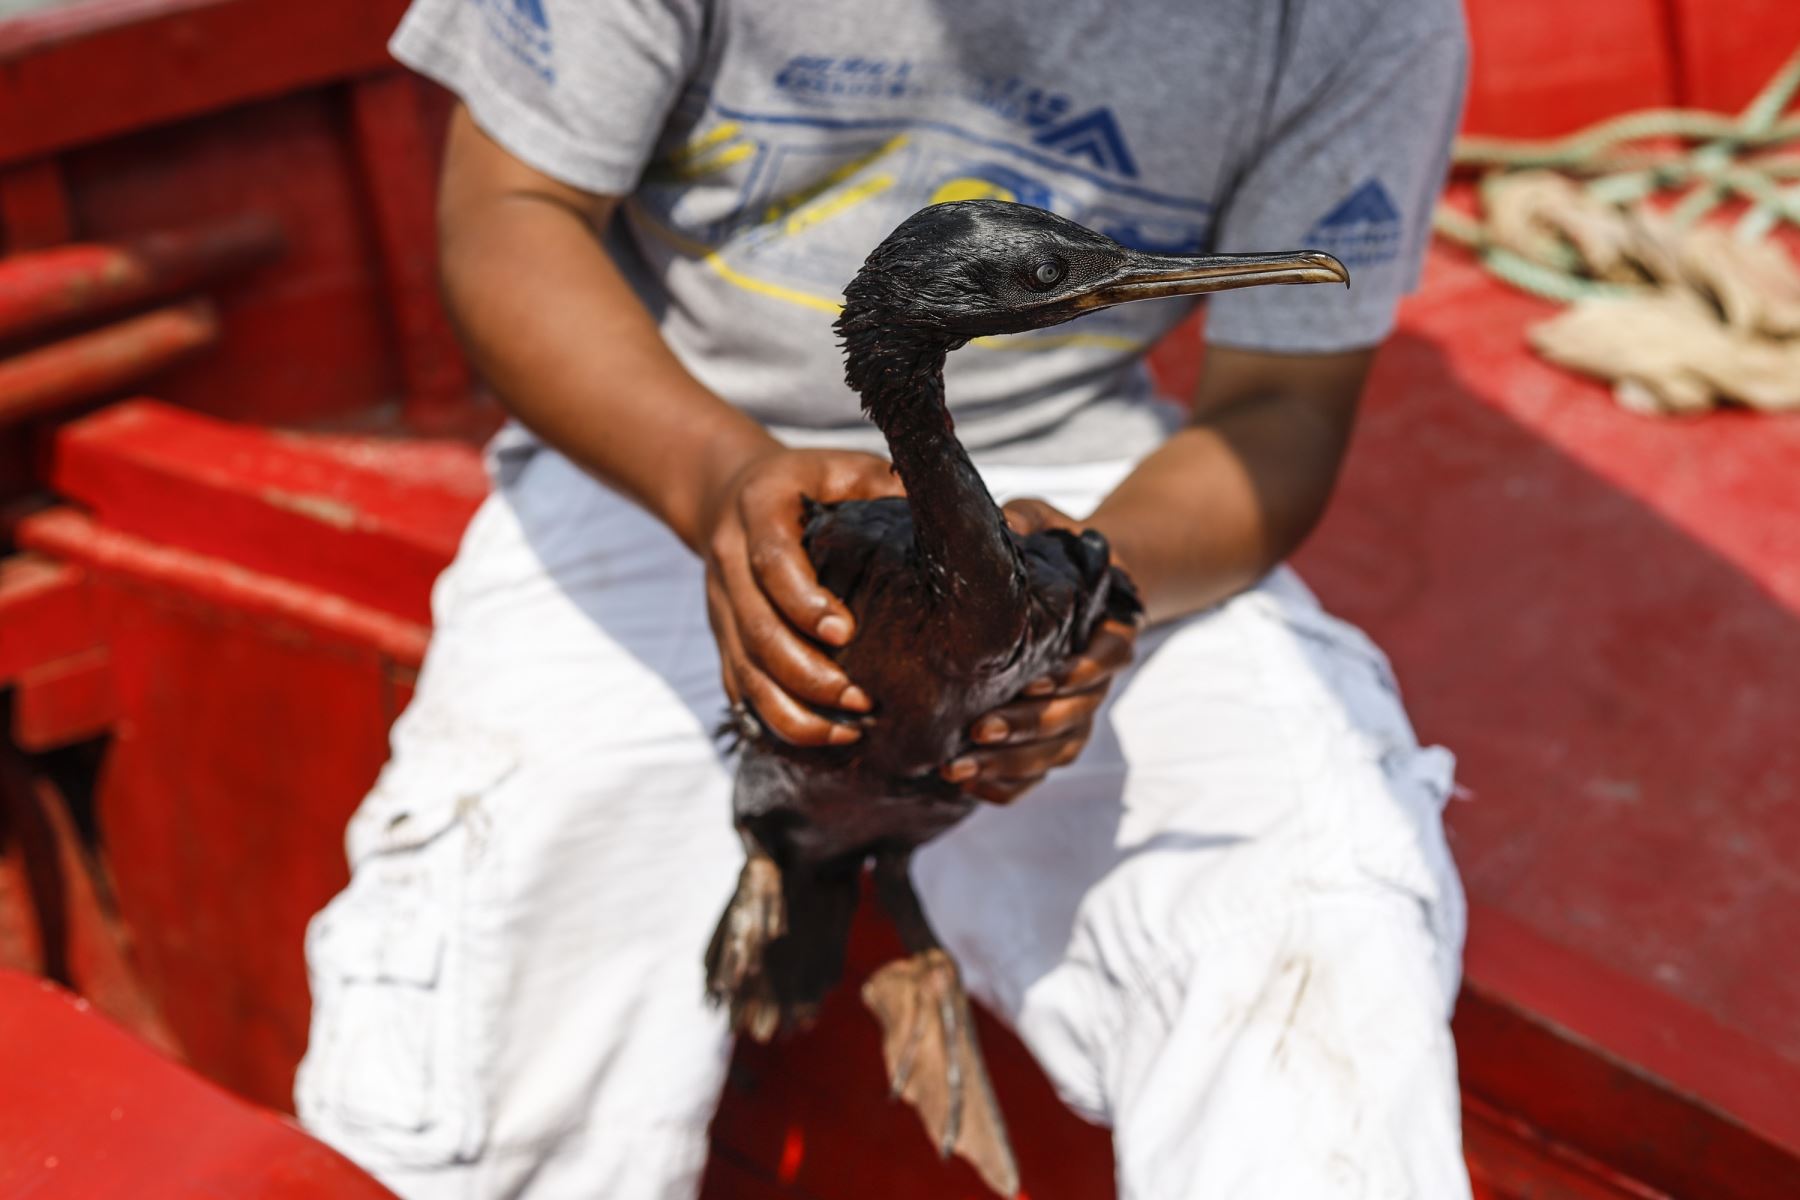 Un equipo de la Agencia Andina, ingresó mar adentro a bordo de una lancha para guía de turistas, donde su propietario se dedica ahora a rescatar a la fauna silvestre afectada por el derrame de 6 mil barrilles de petróleo en la refinería La Pampilla, el pasado sábado 15 de enero. Foto: ANDINA/Renato Pajuelo